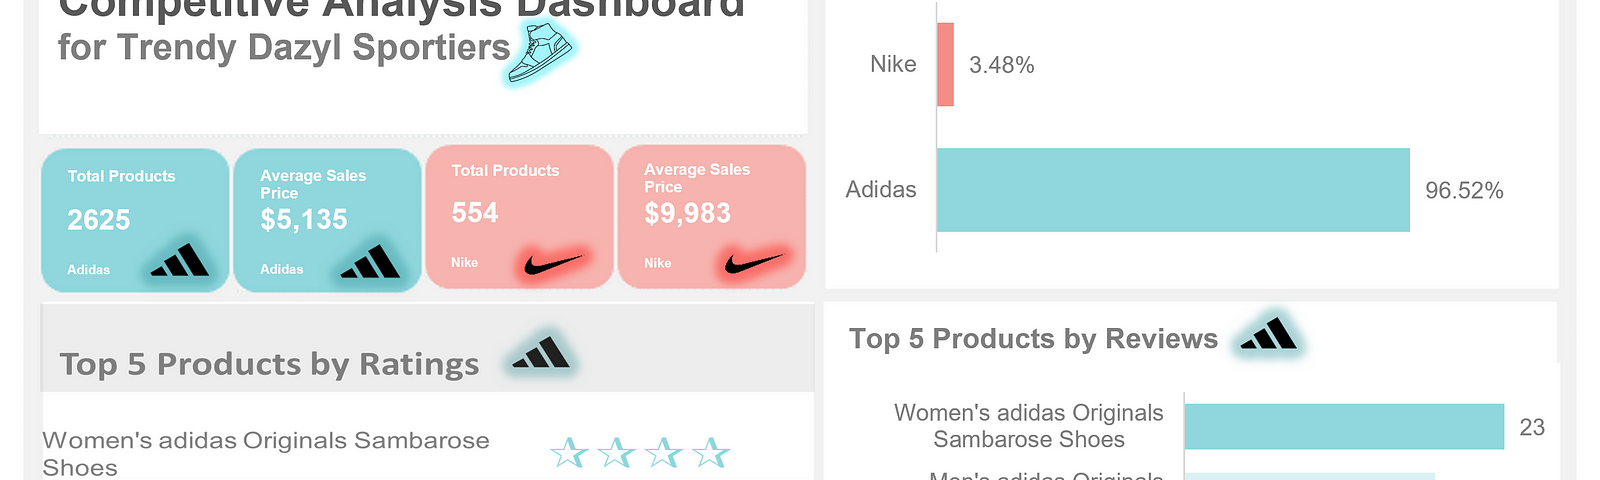 fashion data analytics in retail